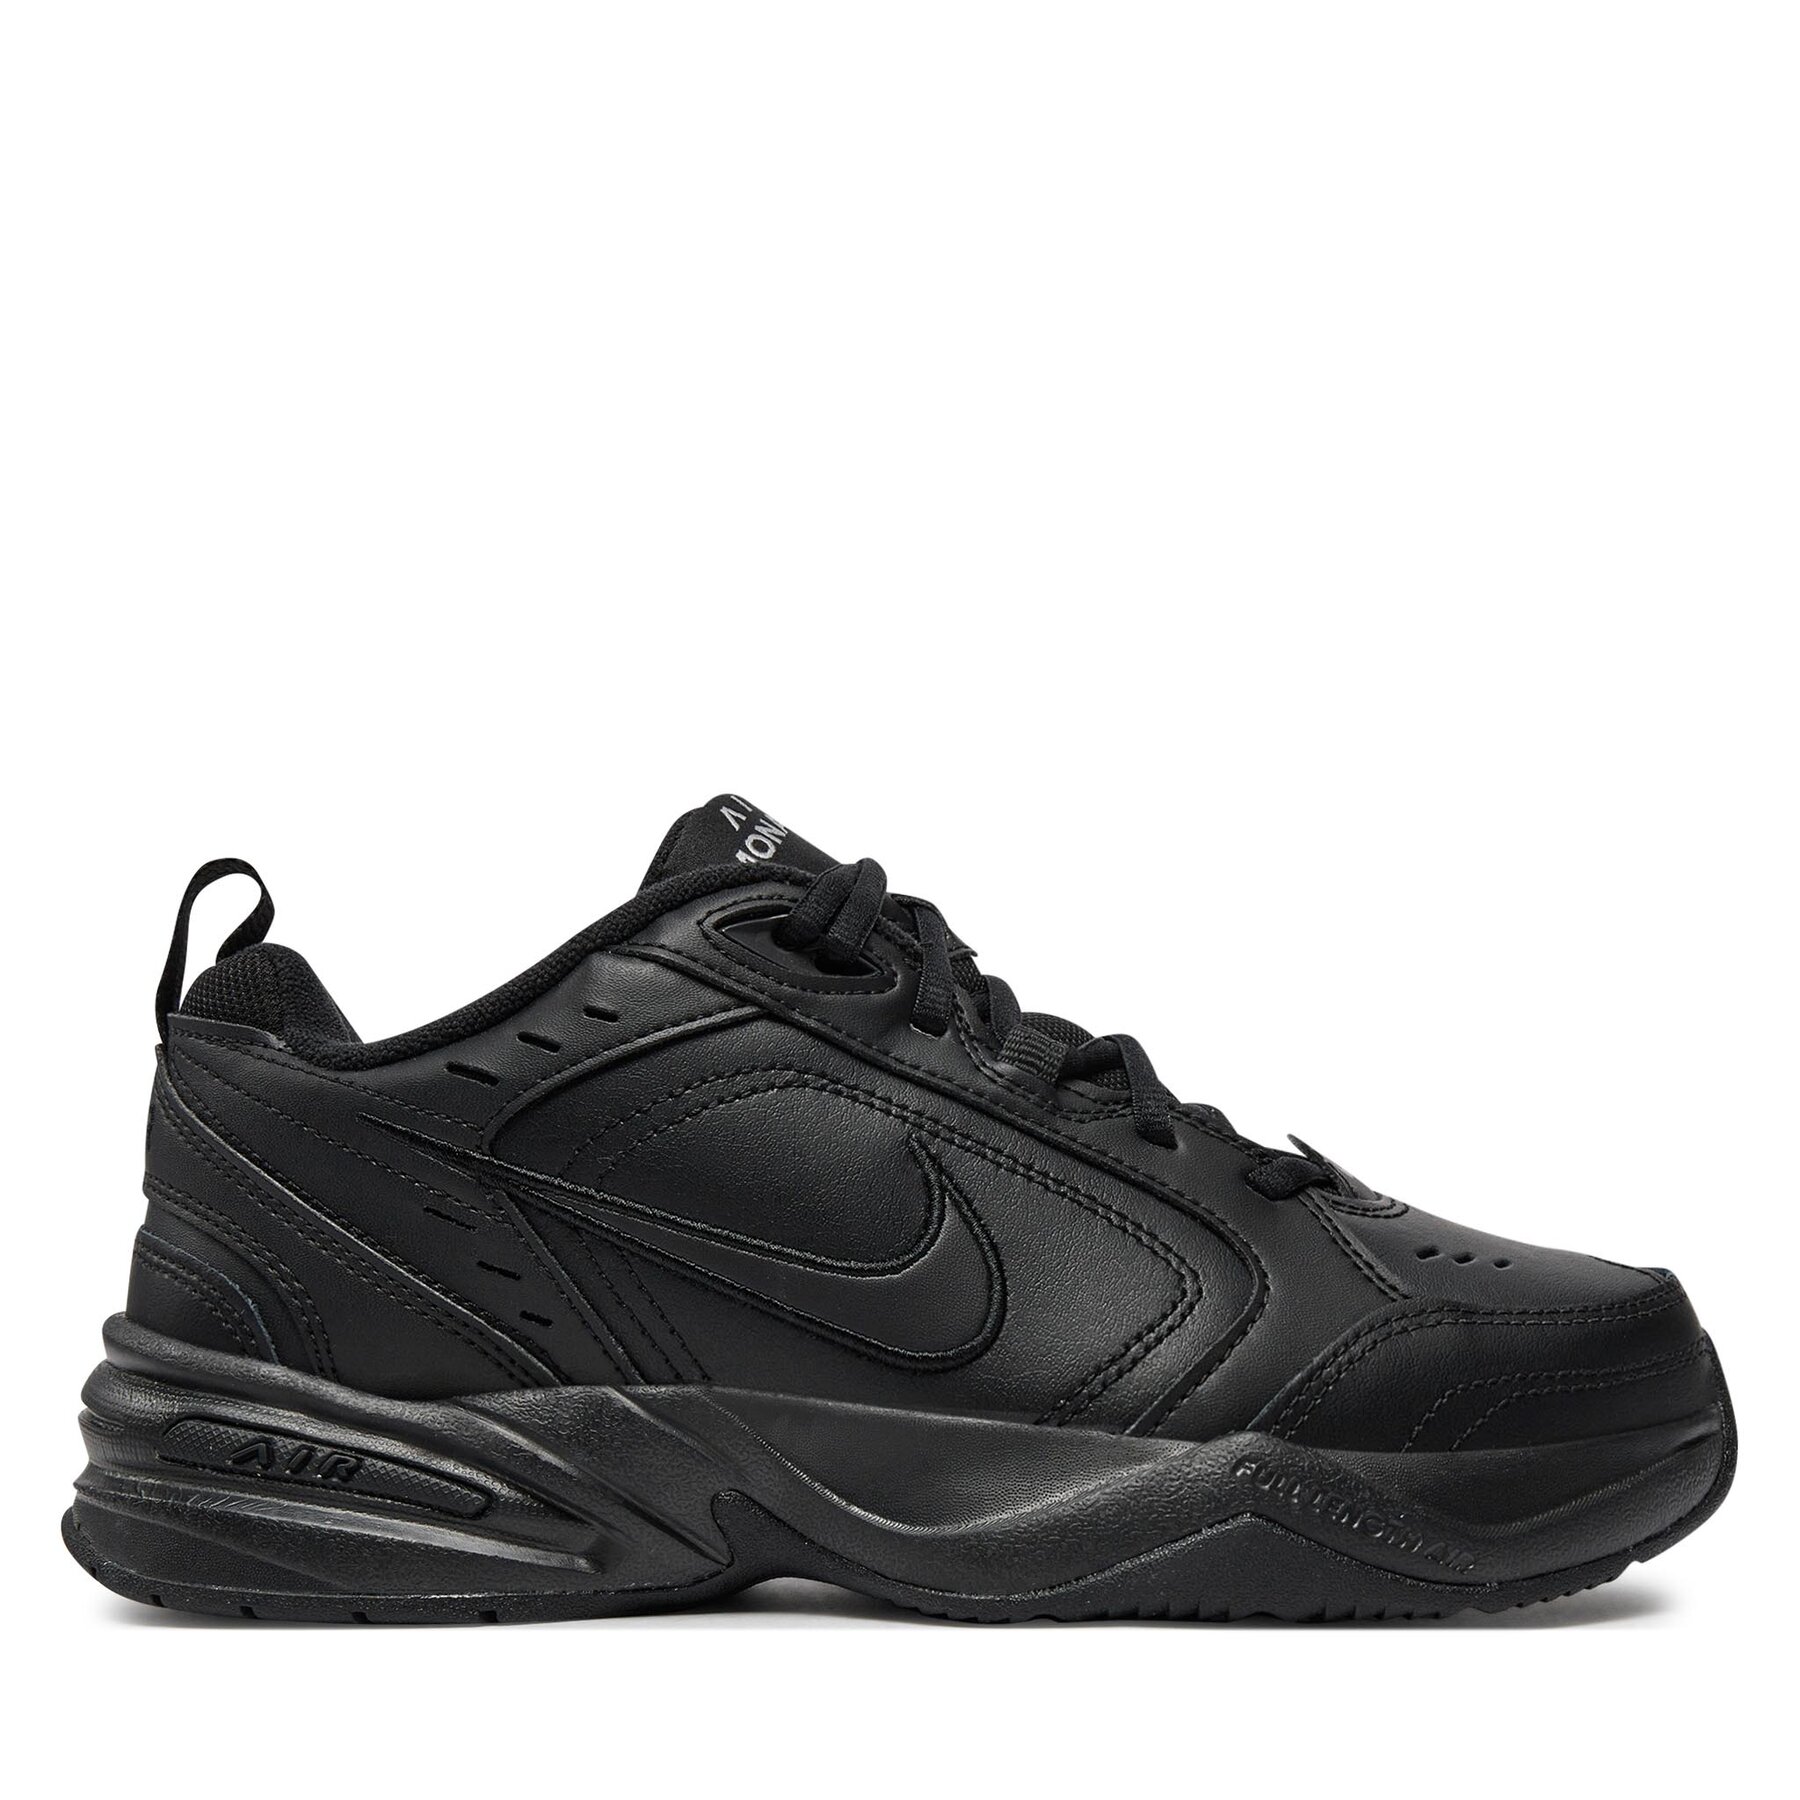 Chaussures pour la salle de sport Nike Air Monarch IV 415445 001 Noir